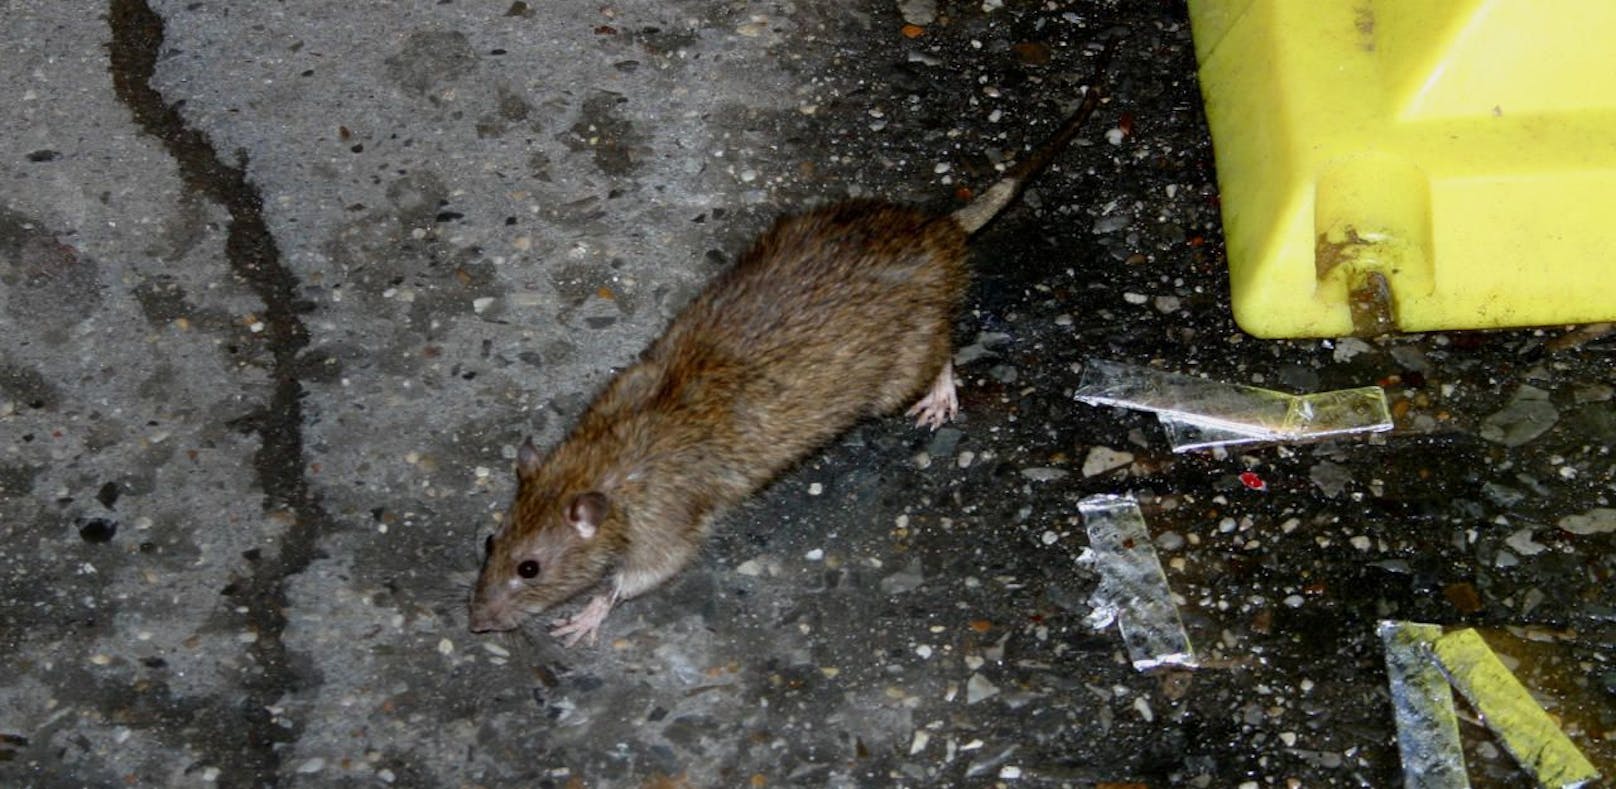 Rattenplage durch kompostierte Speisereste und Küchenabfälle. (Symbolbild)